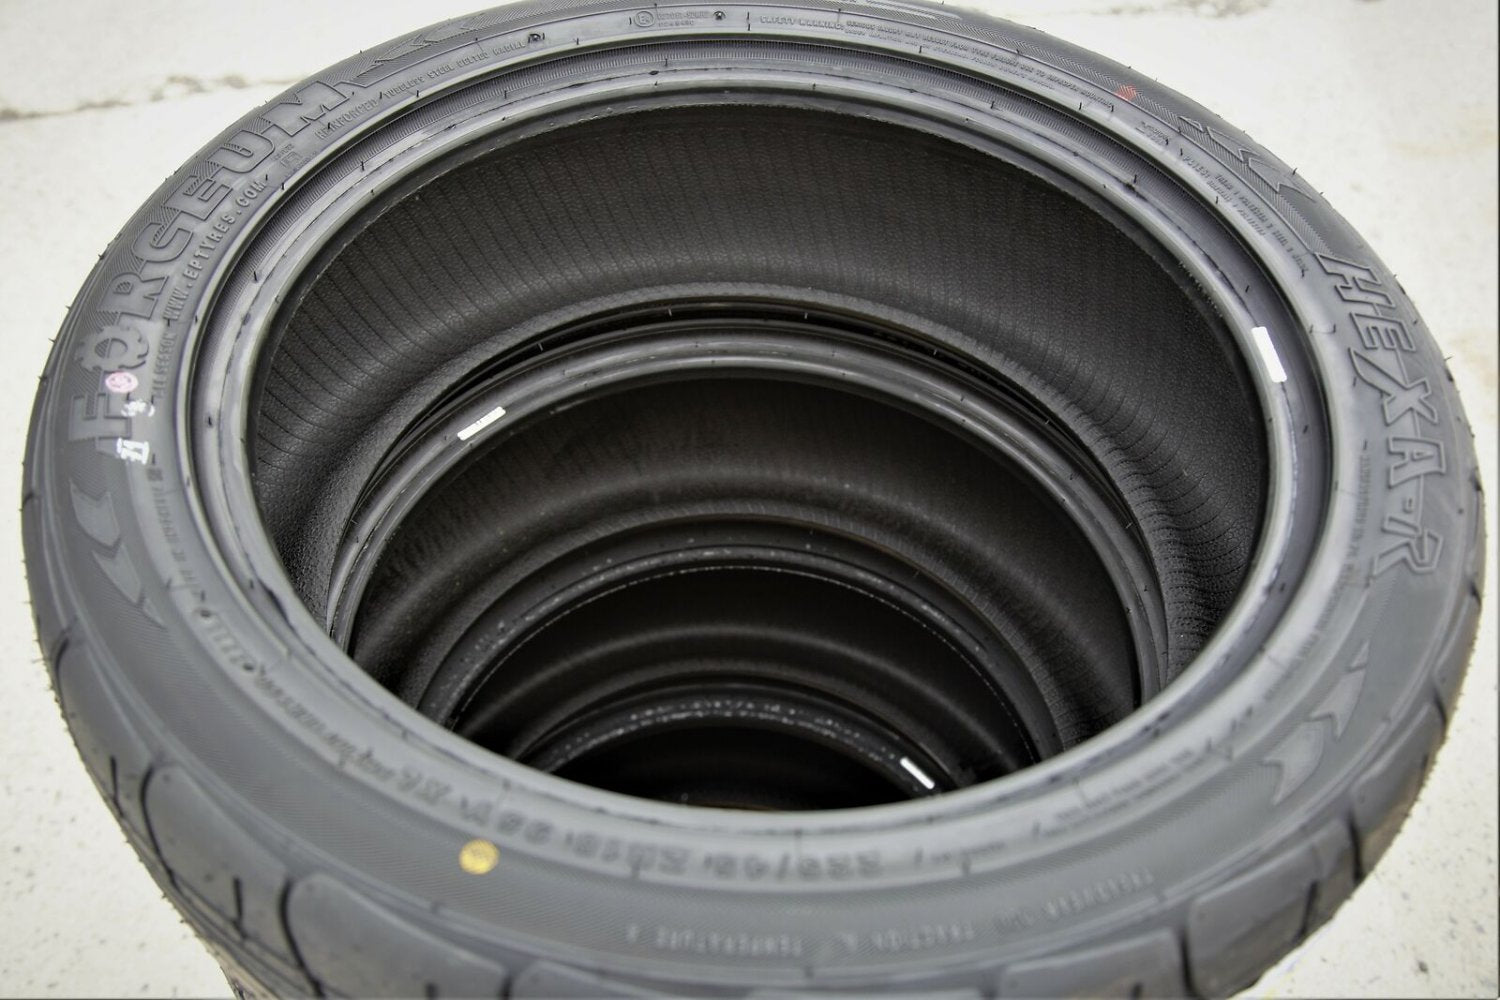 Tire Forceum Hexa-R 225/50R17 ZR 98W XL A/S High Performance All Season